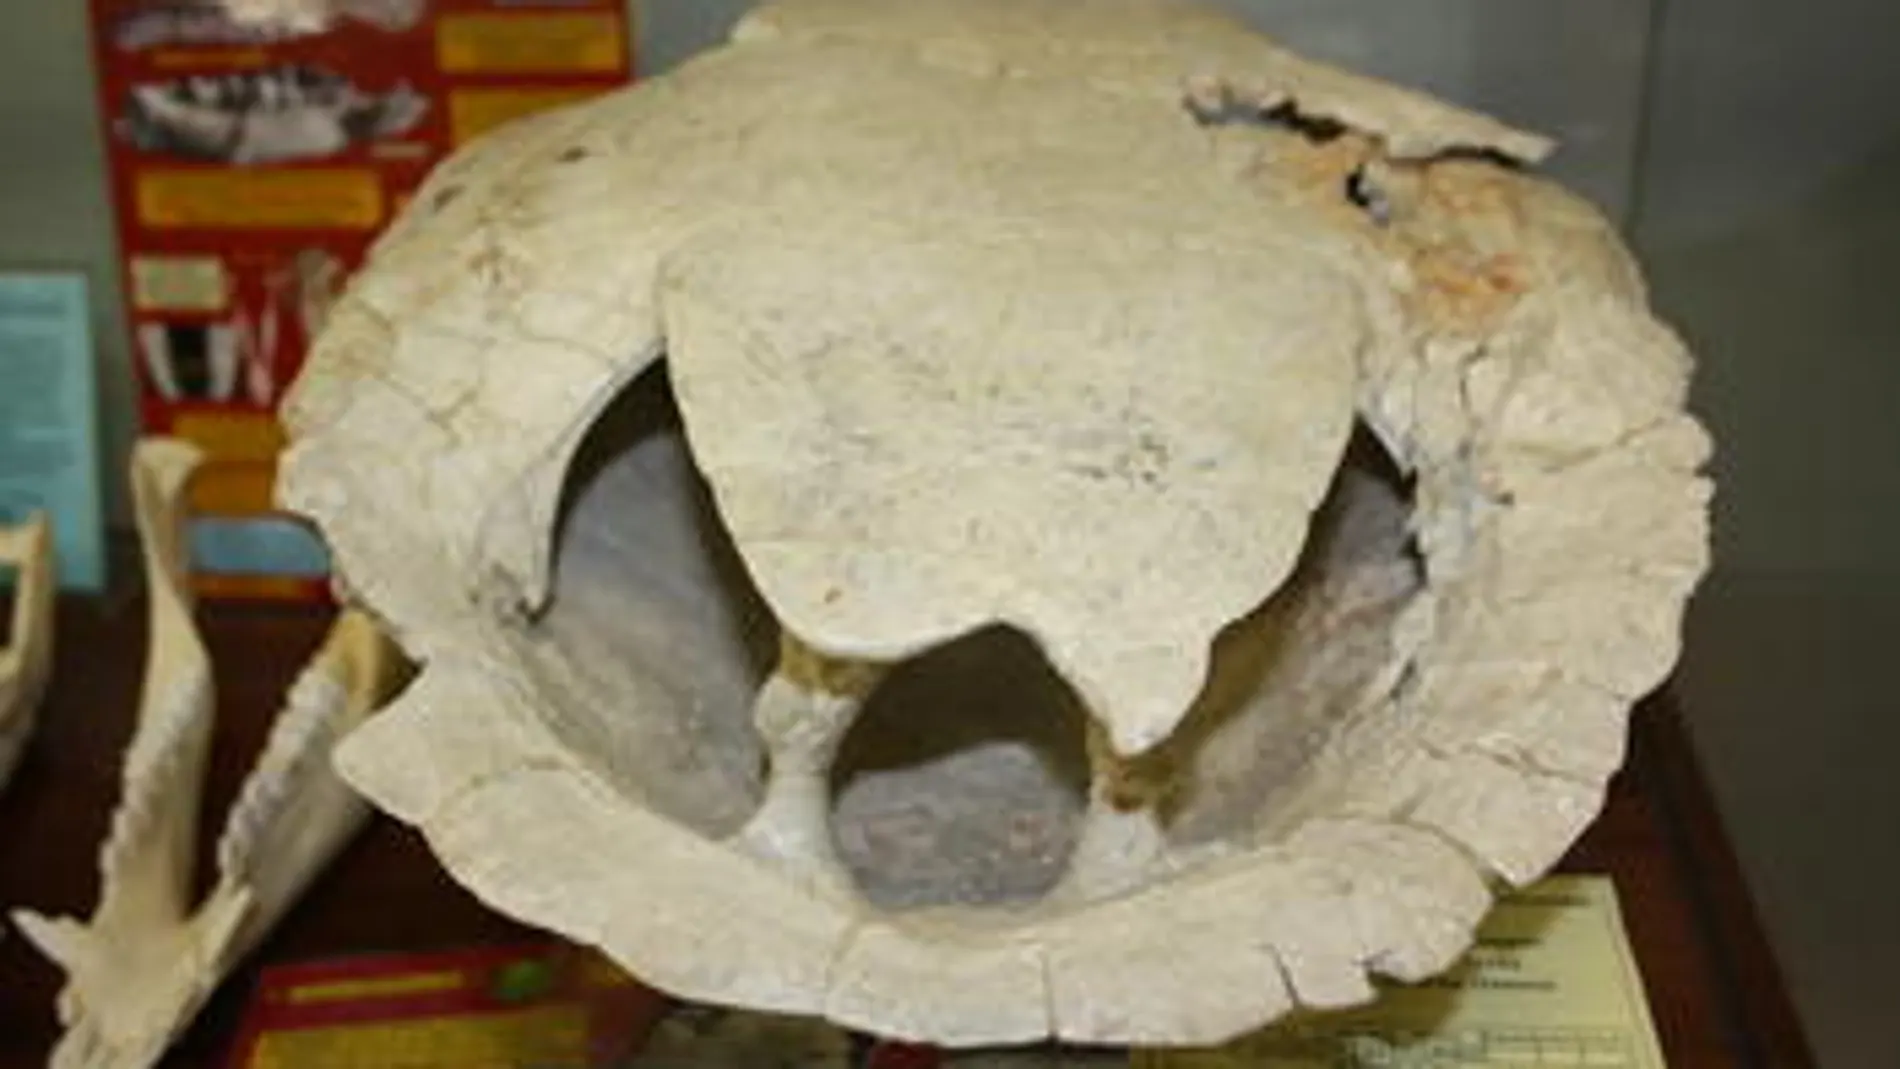 ‘Neochelys salmanticensis’, tortuga del Eoceno medio con una deformidad en forma de asimetría en la cintura pélvica que hace que se la llame “bisexual” por parecer a la vez macho y hembra.